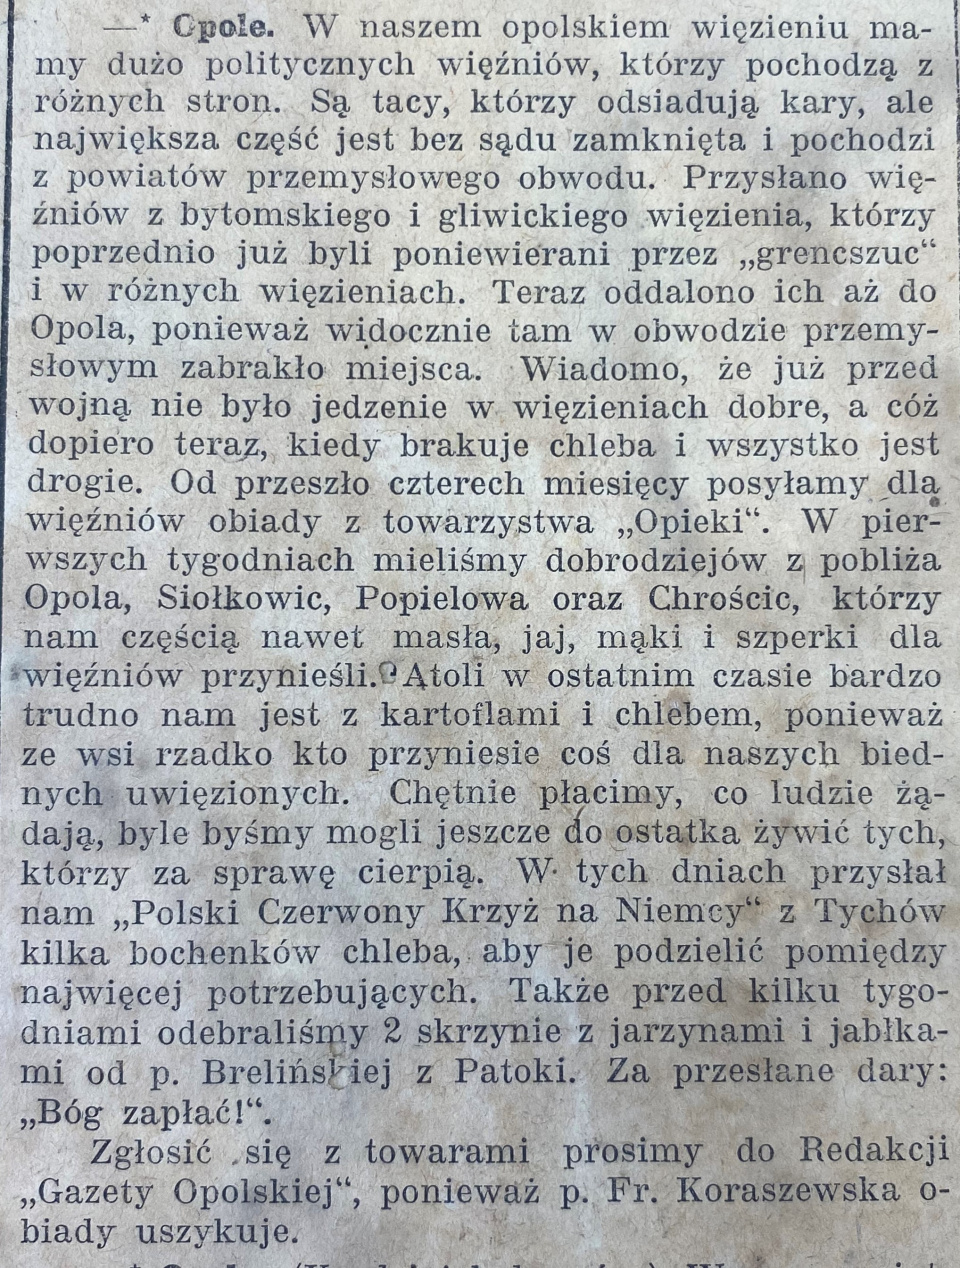 Chróścicie, Opole, Popielów, Siołkowice, Gazeta Opolska (28.10.1919)